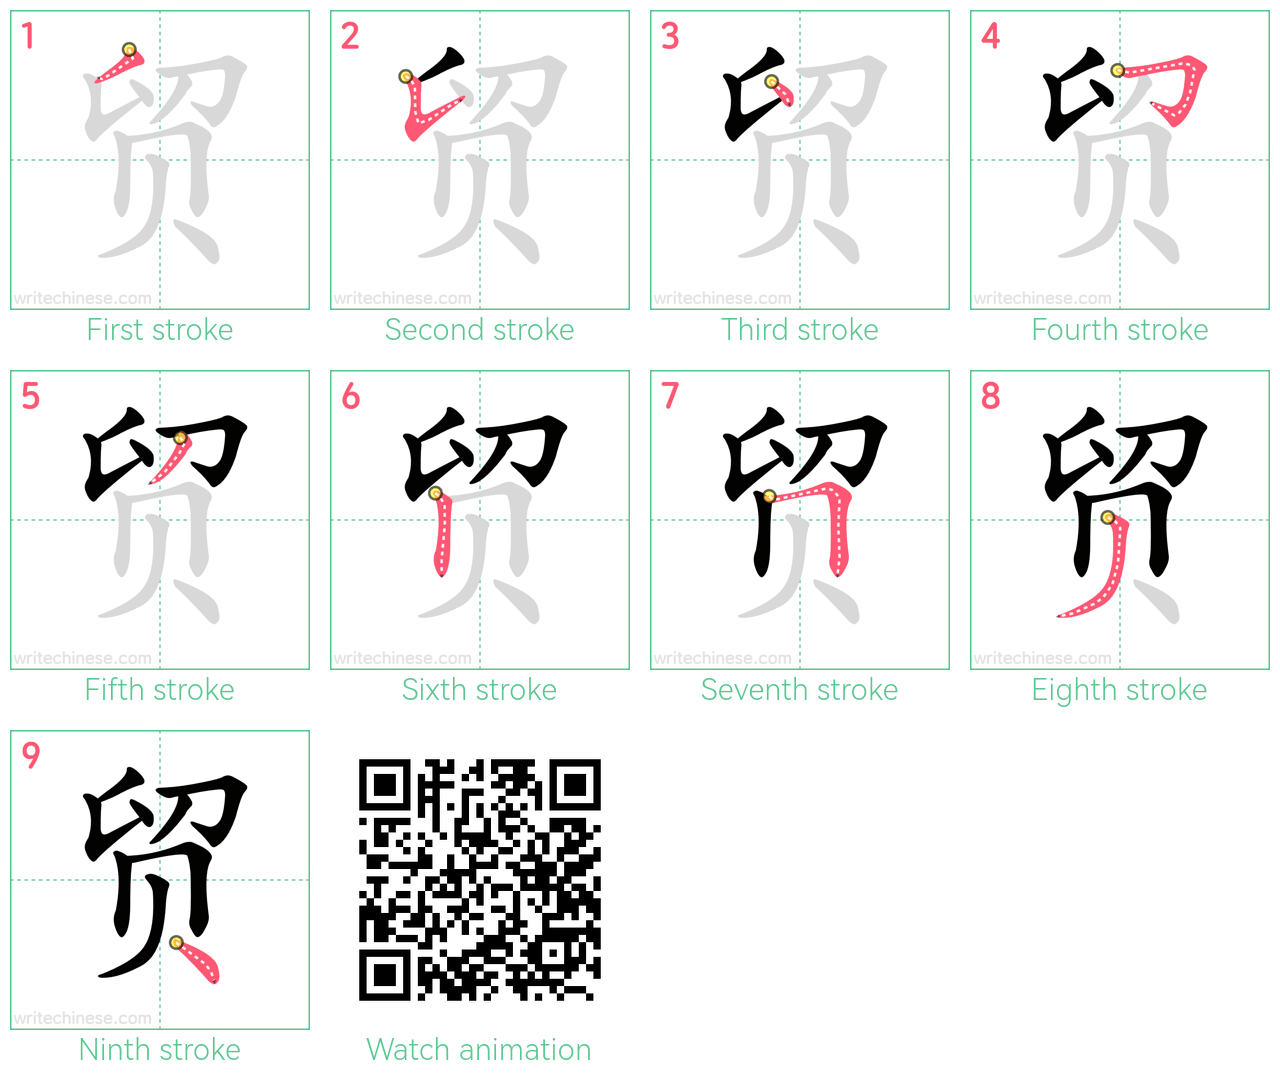 贸 step-by-step stroke order diagrams